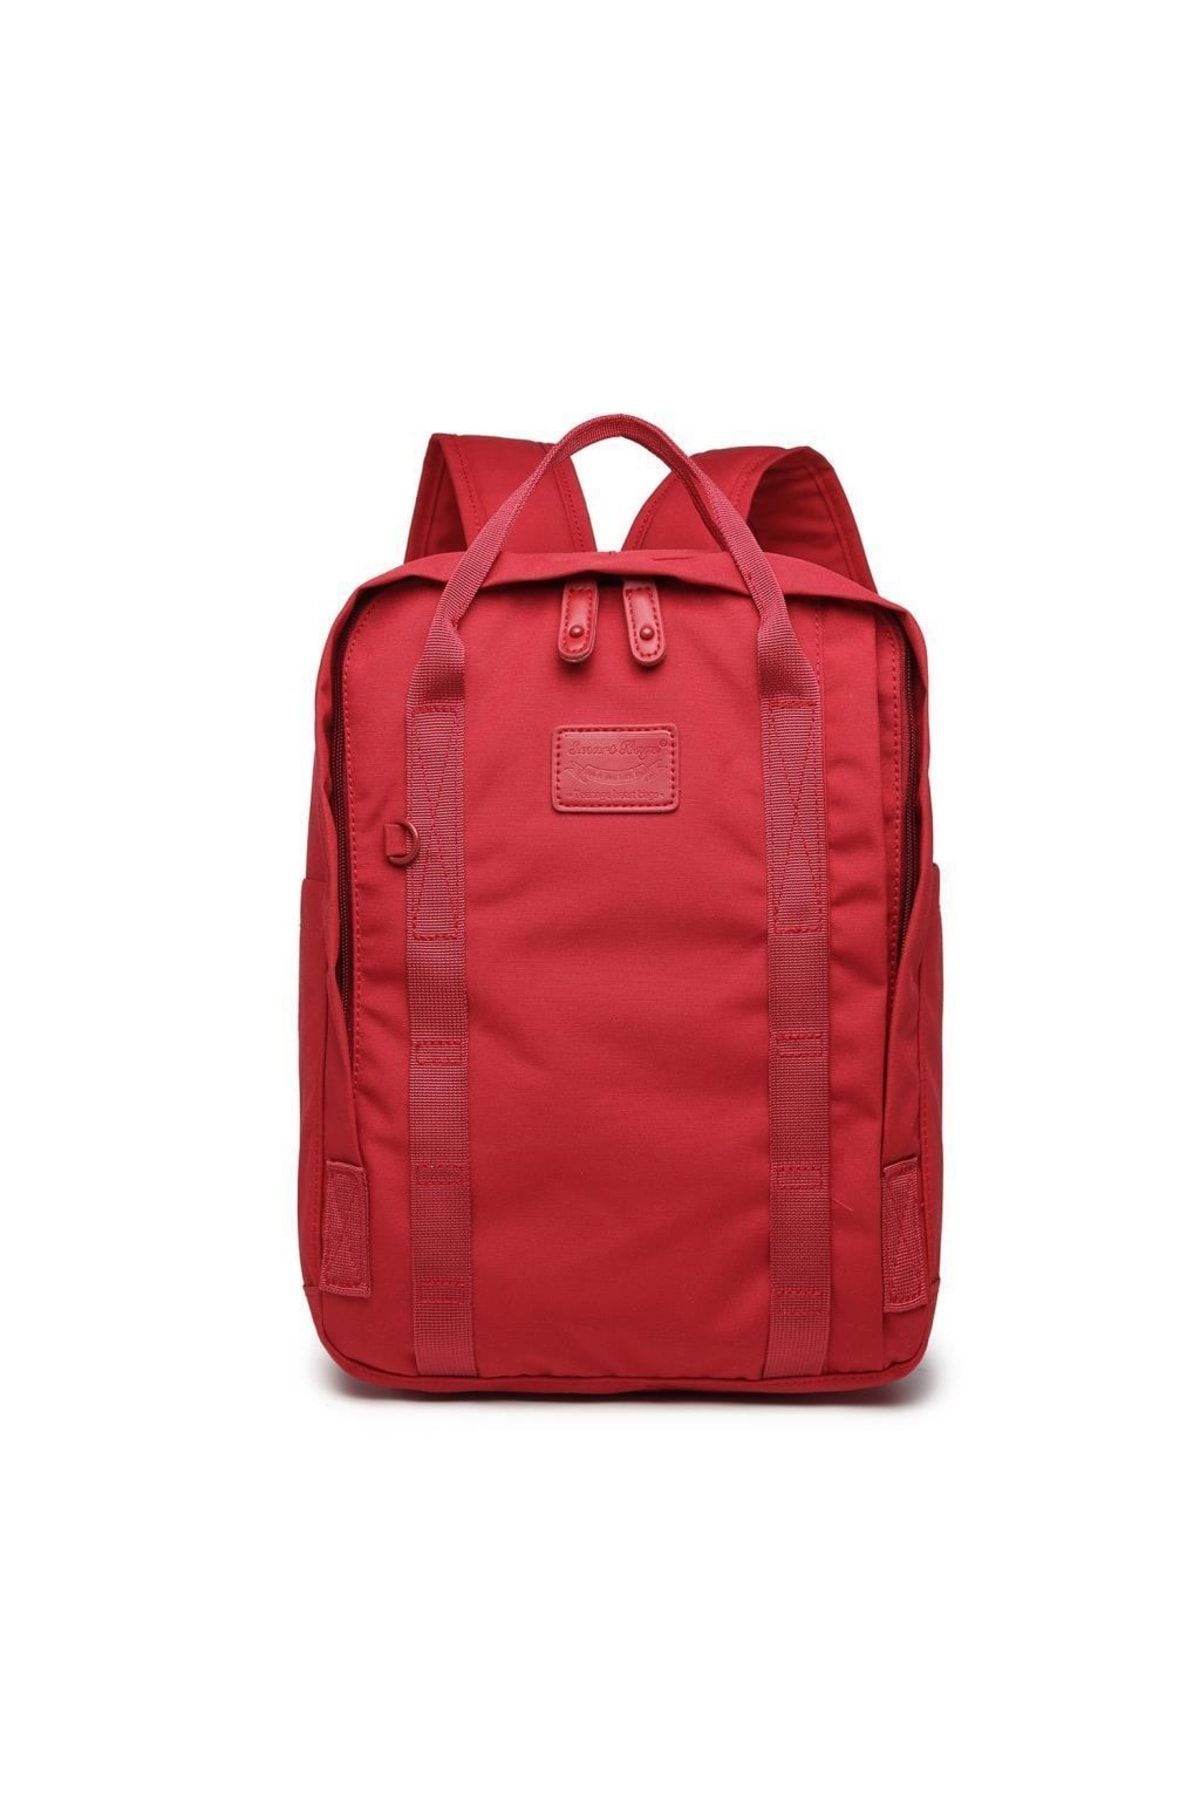 Smart Bags Uniseks Sırt Çantası Okul Boyu Vinylon Kumaş 3190